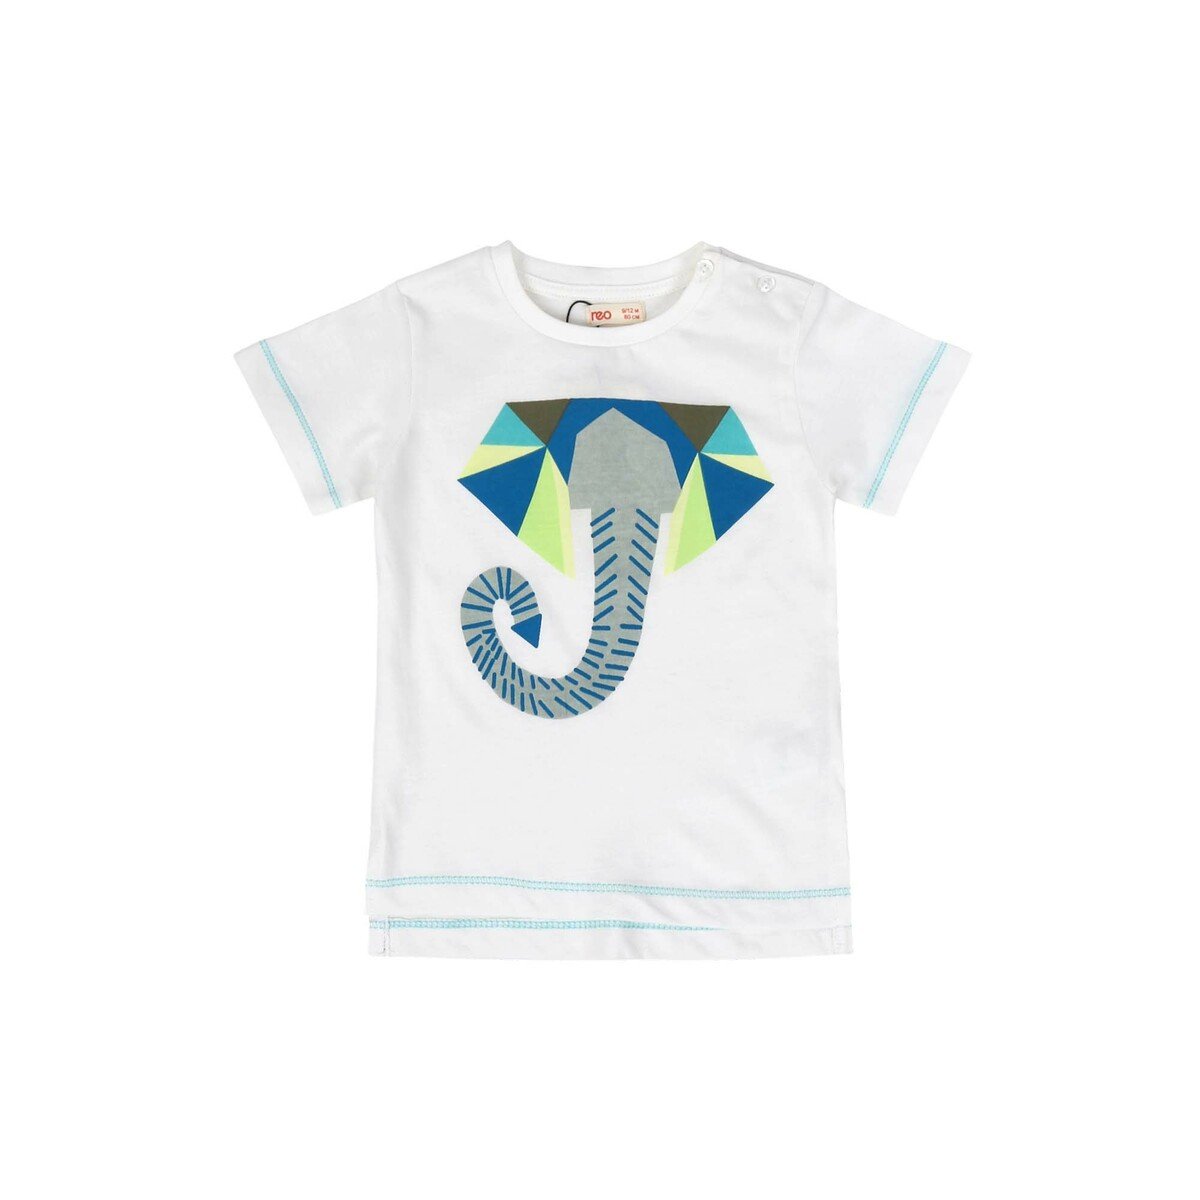 Reo Infant Boys T-Shirt B9IB486-A, 9-12M